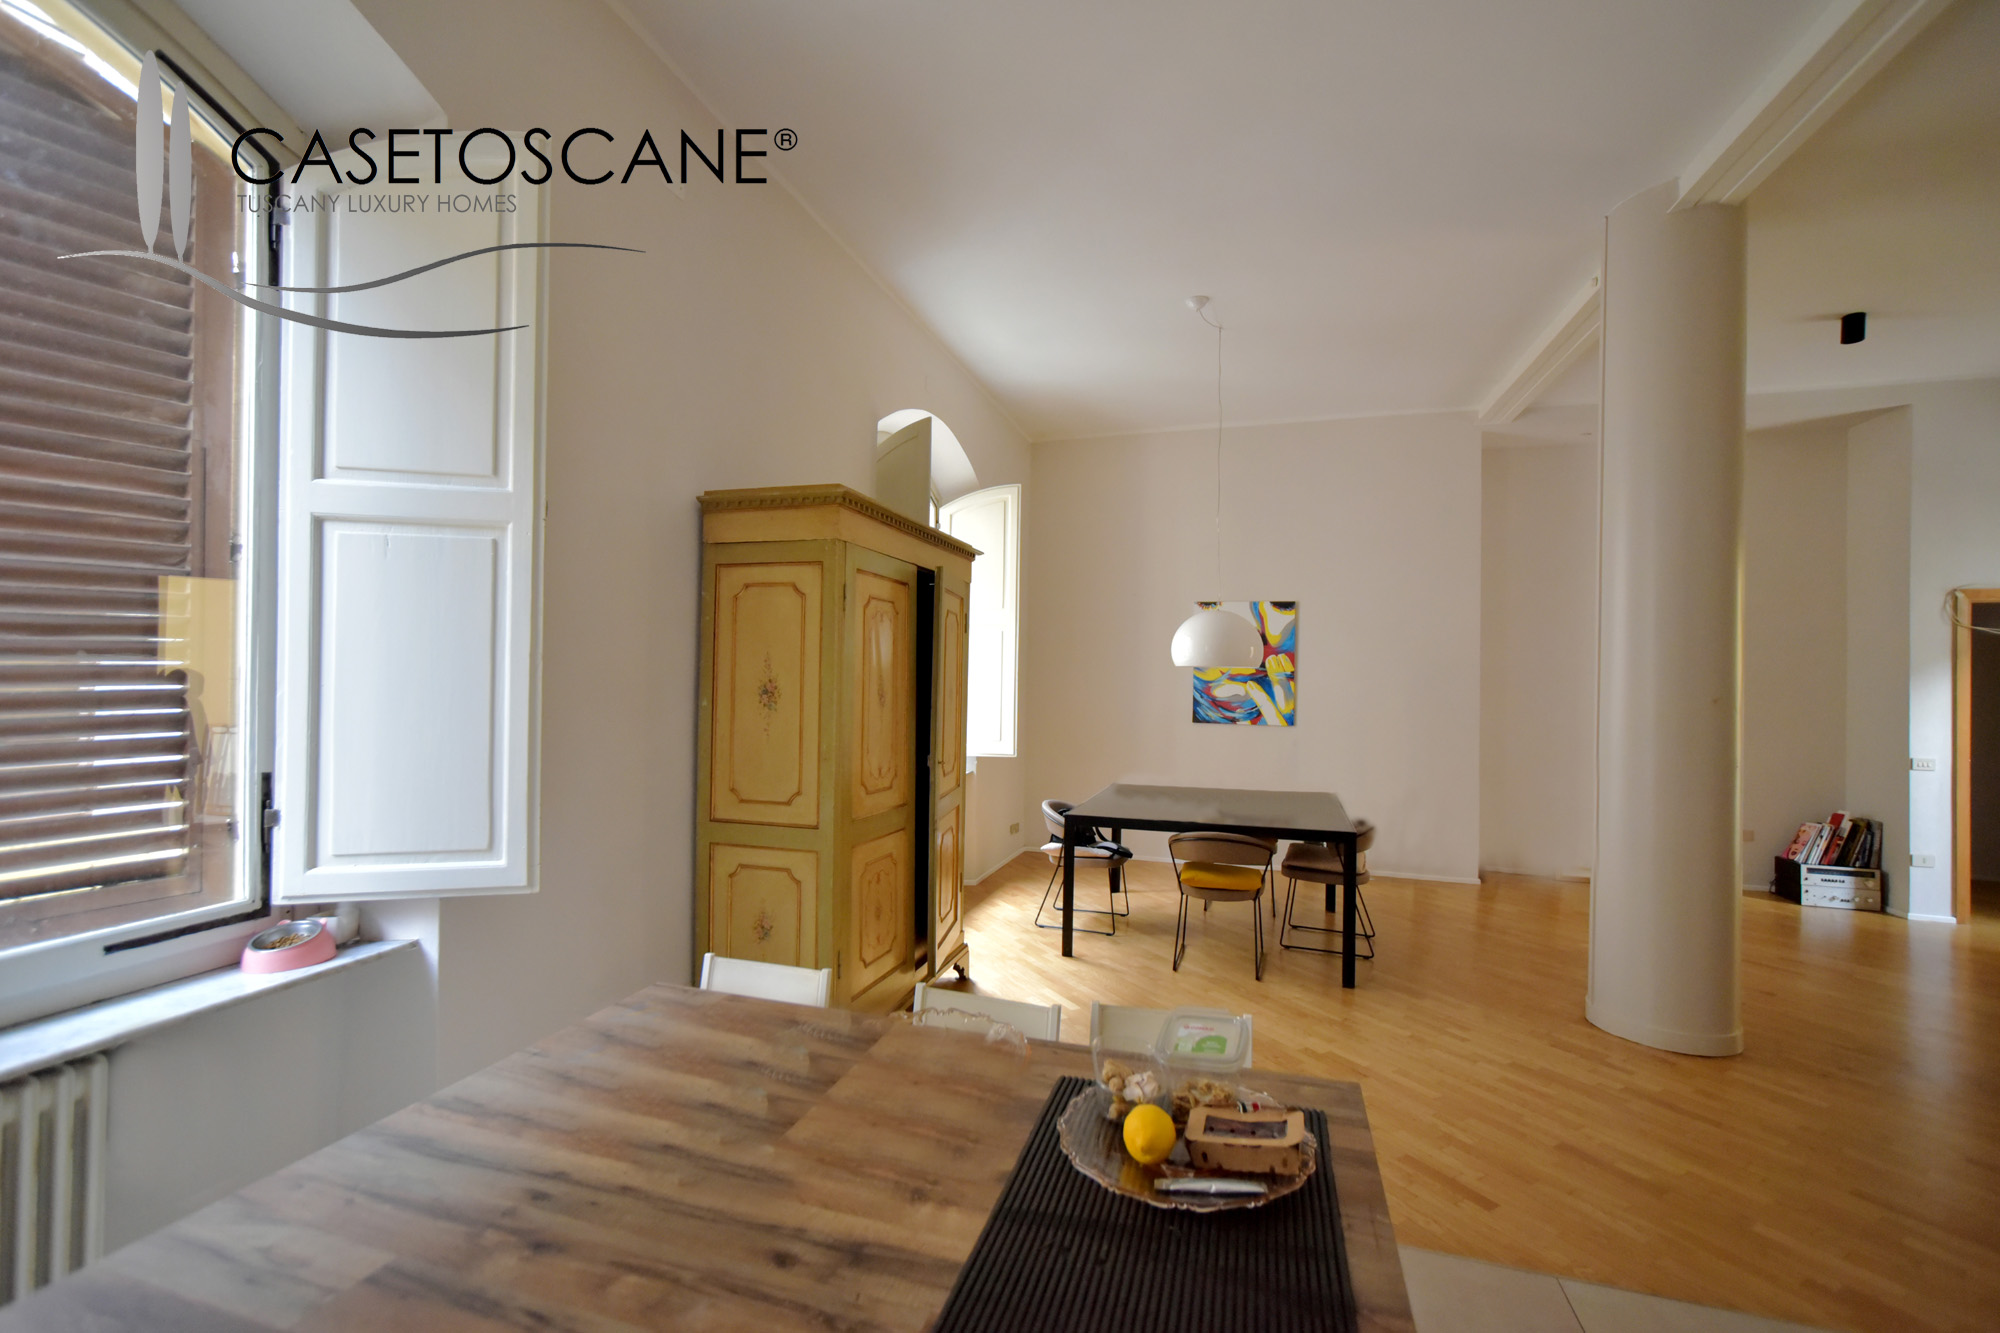 A760 - Ampio appartamento recentemente ristrutturato di mq.130 con cortile privato di mq.40 in palazzo di storico nel centro storico di Arezzo.